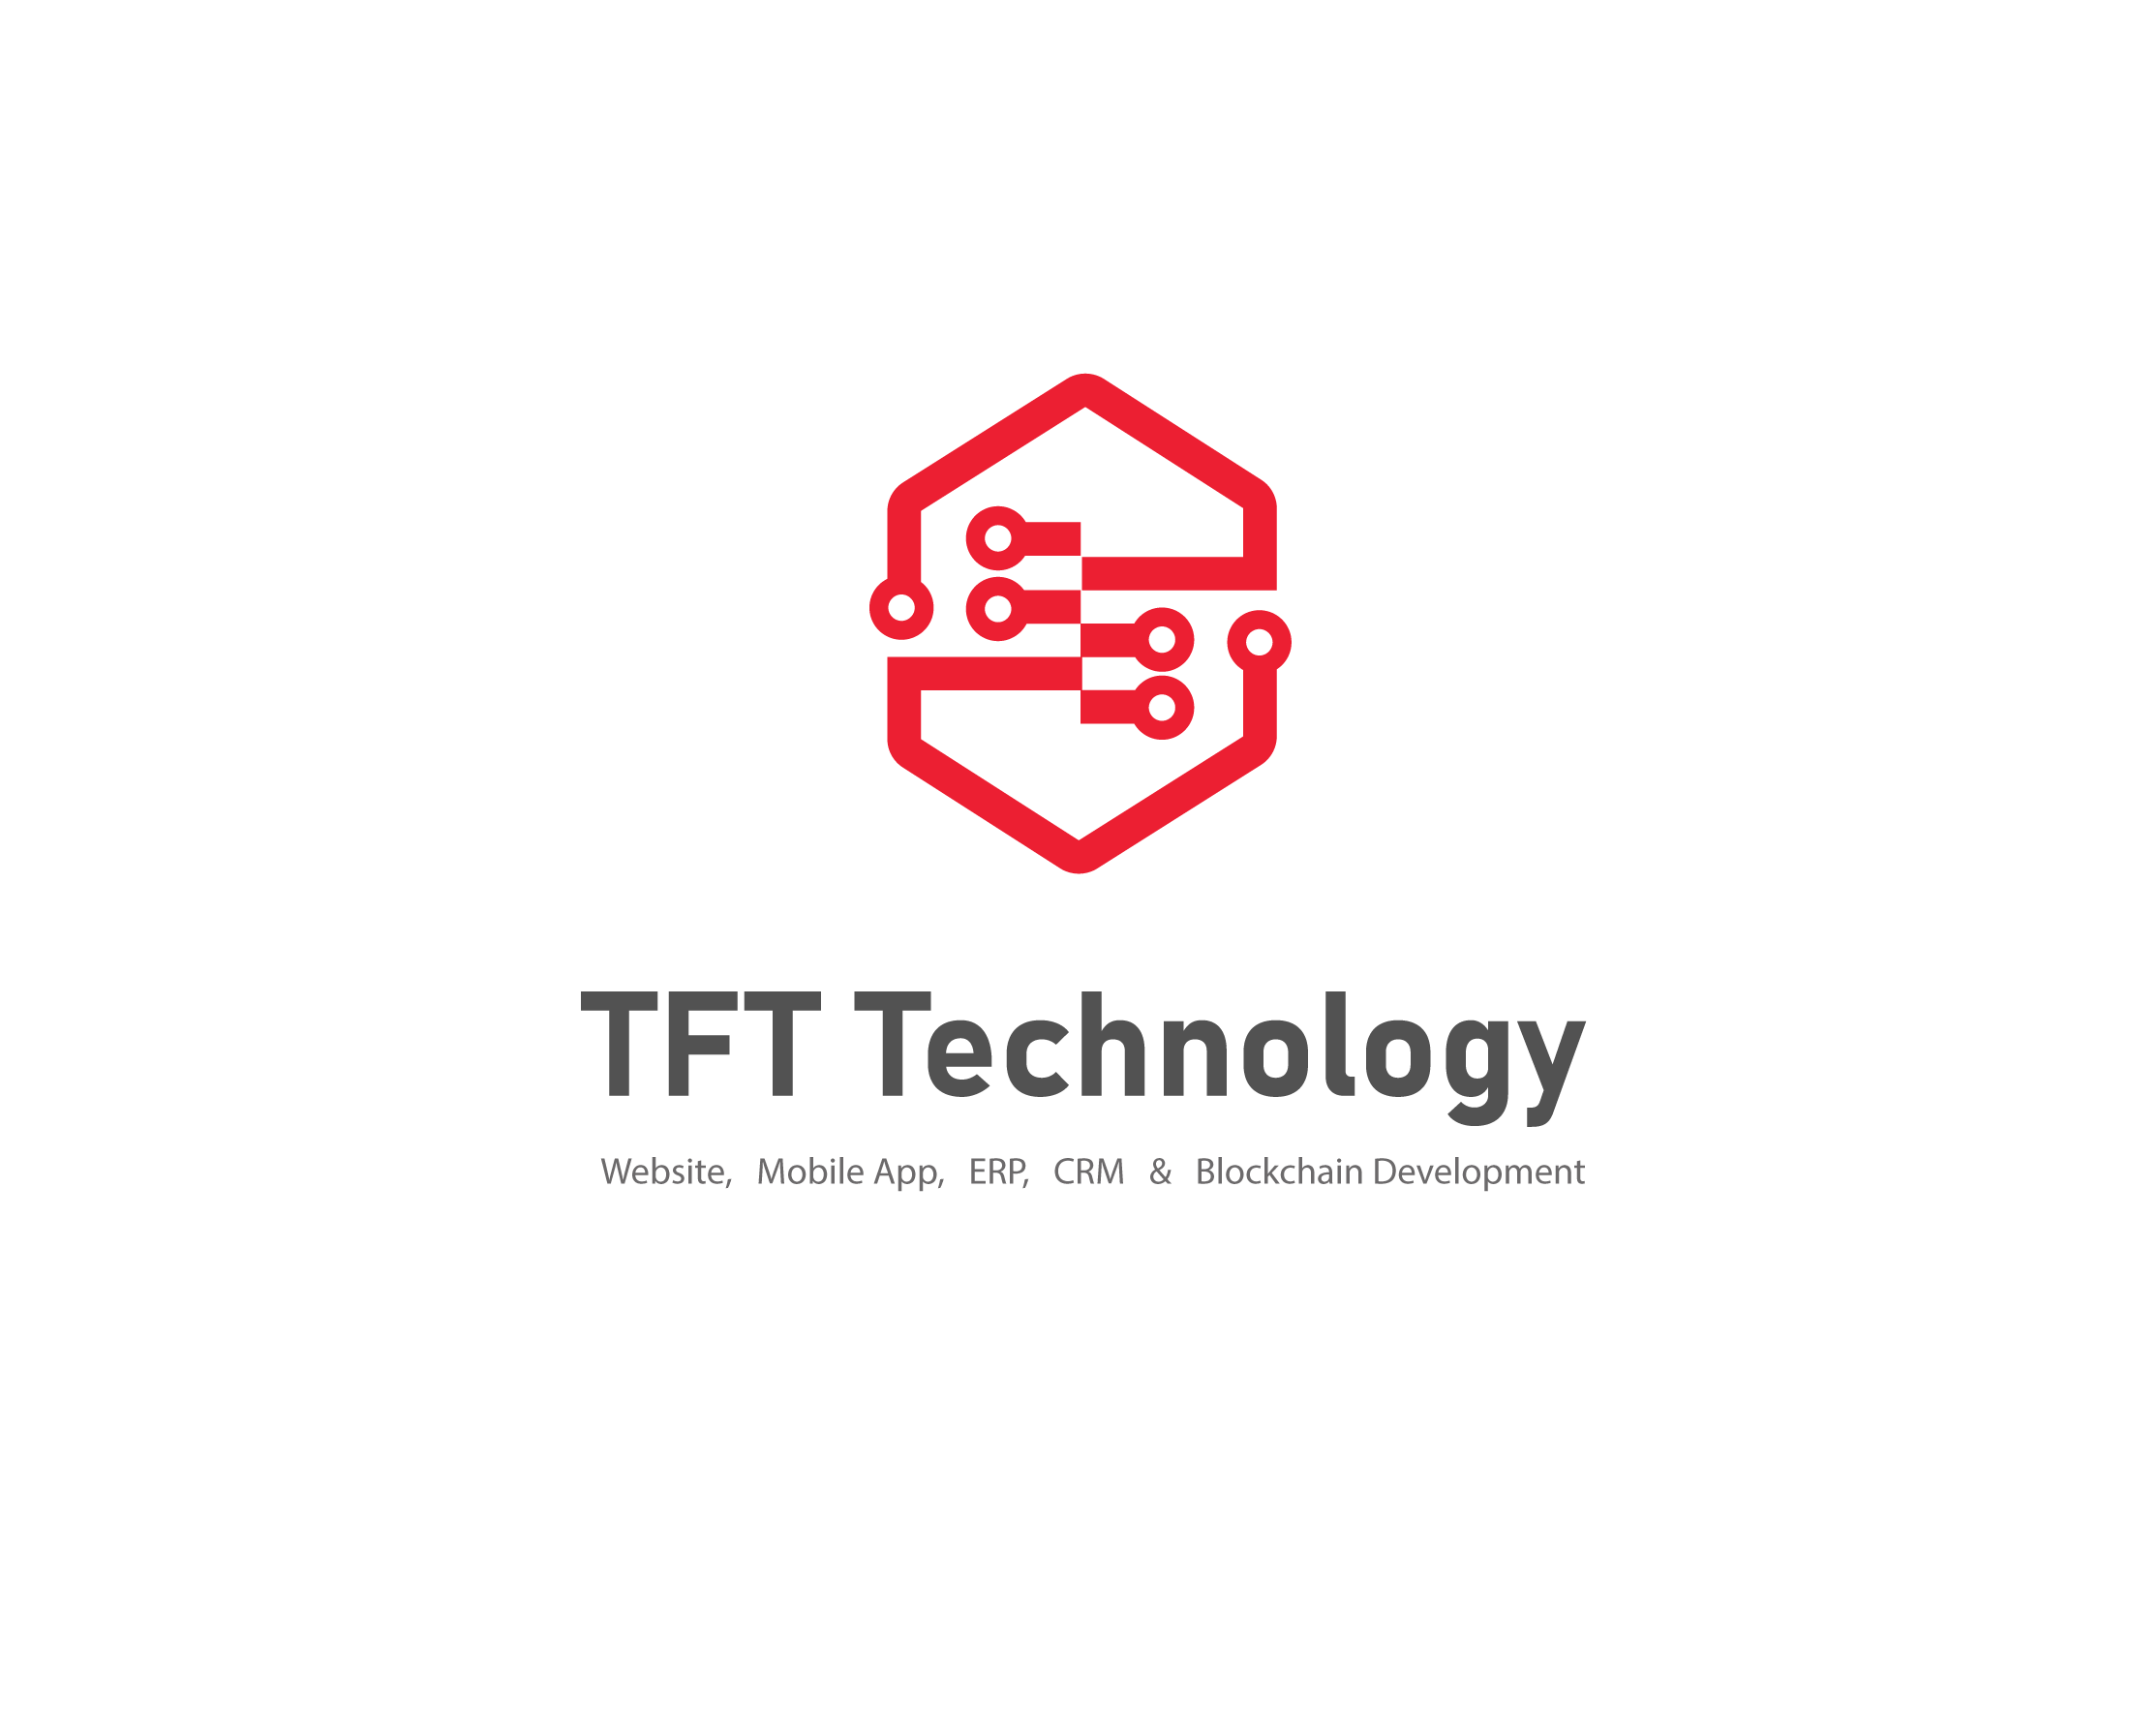 1-tft-technology-logo-for-print